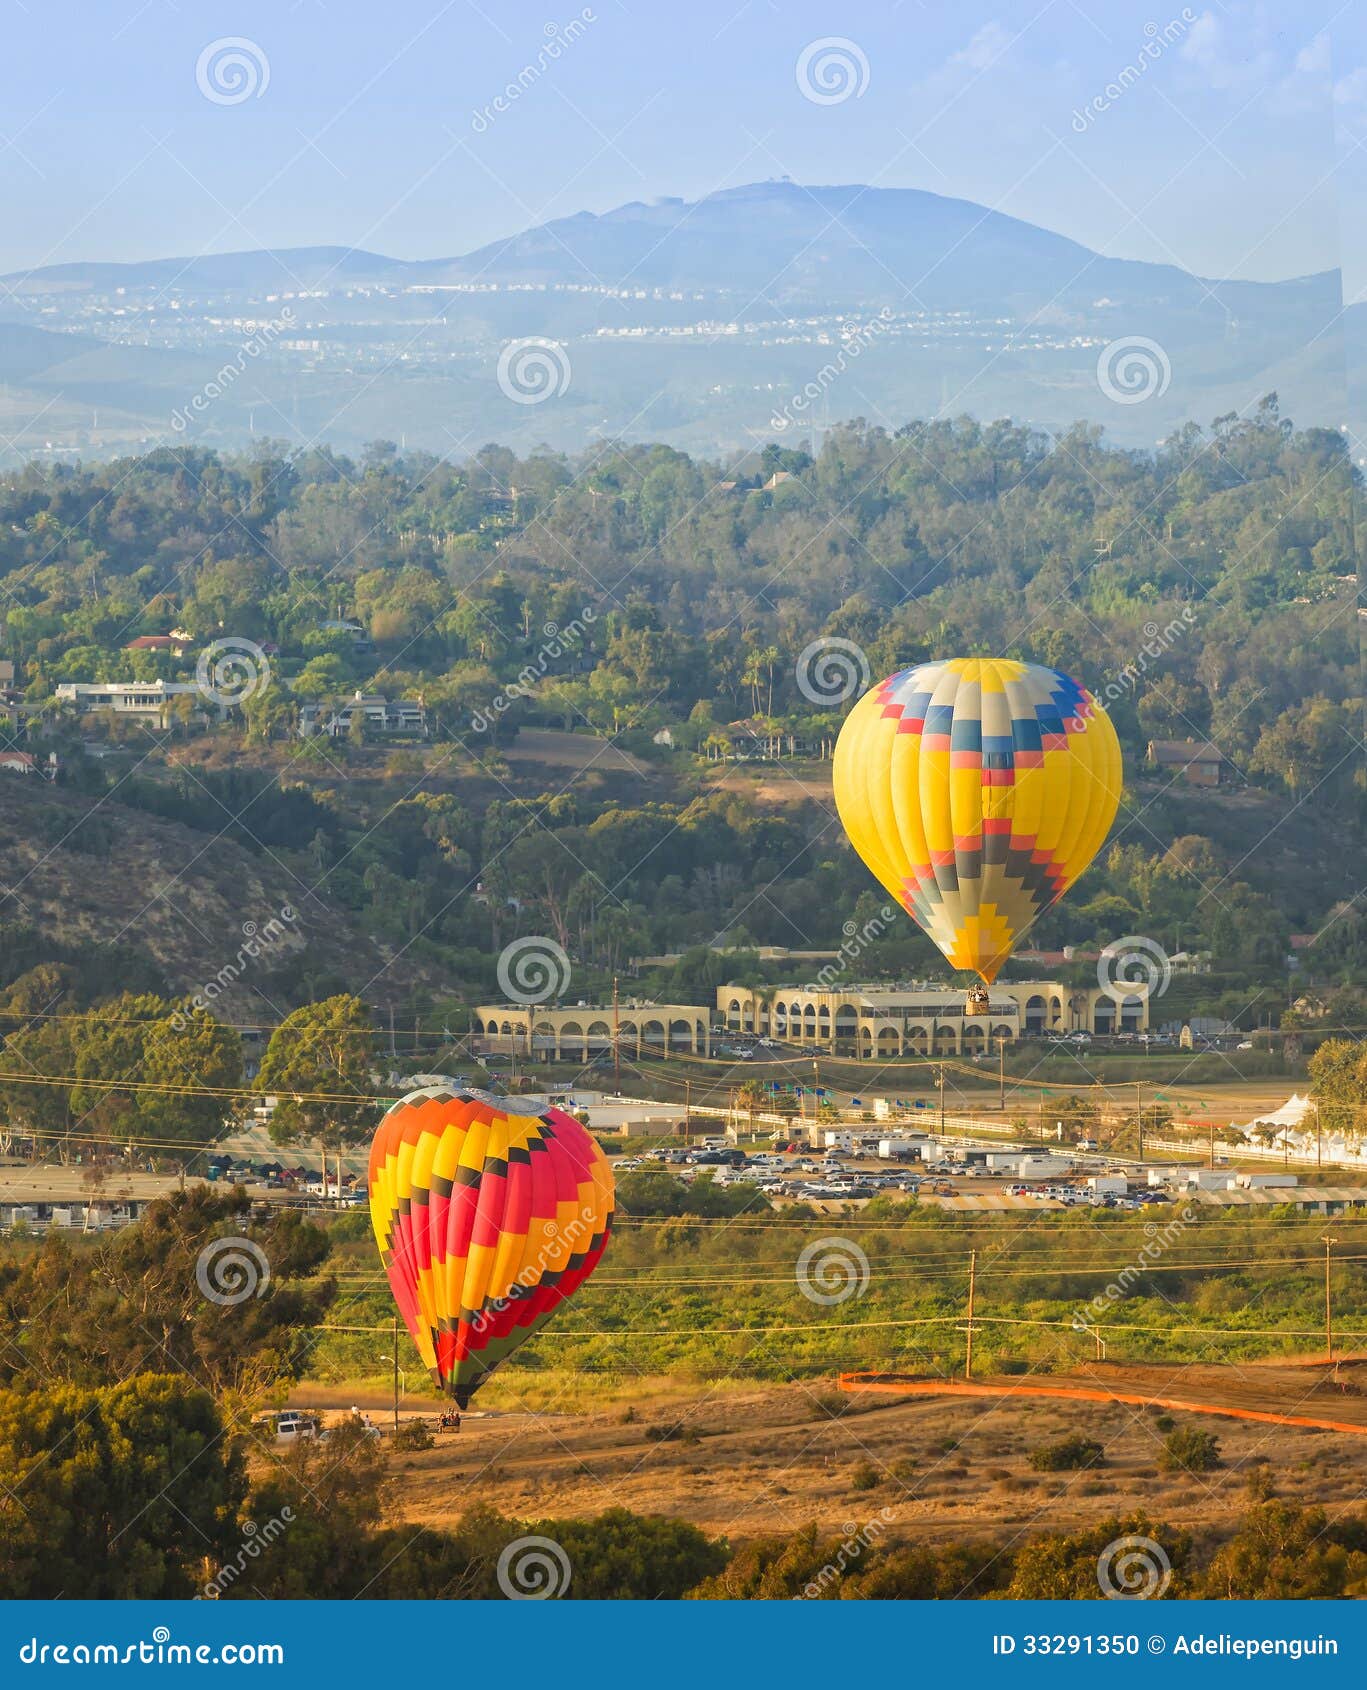 balloons take flight, del mar, california